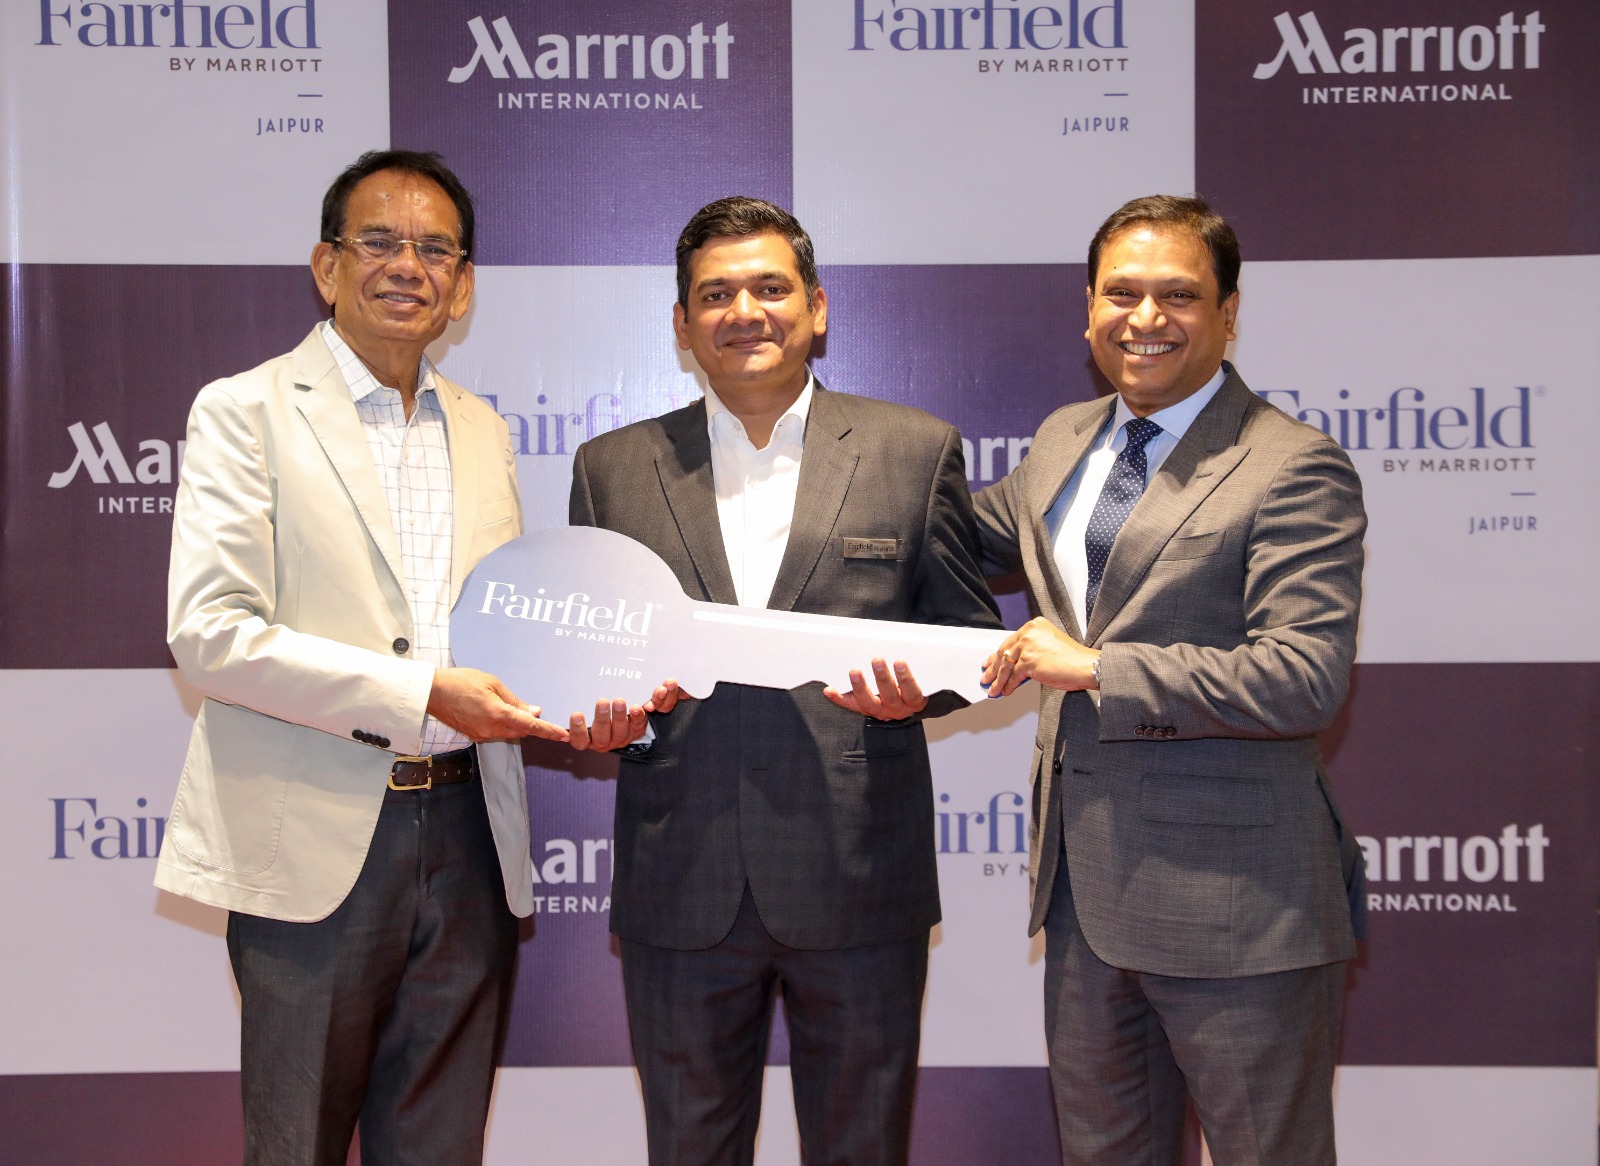 Marriott launches Fairfield by Marriott Jaipur